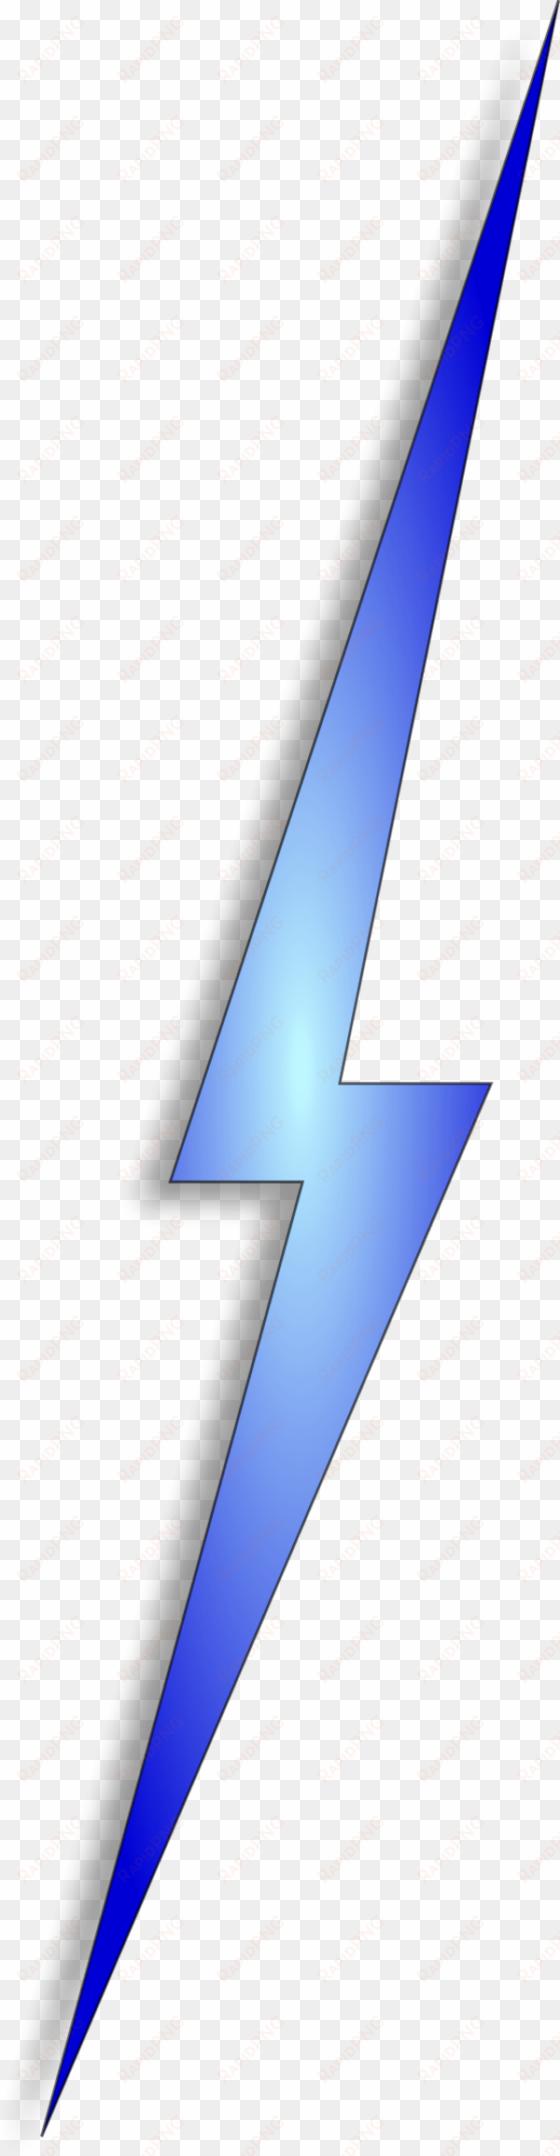 lightning clipart thunderbolt - blue lightning bolt clipart